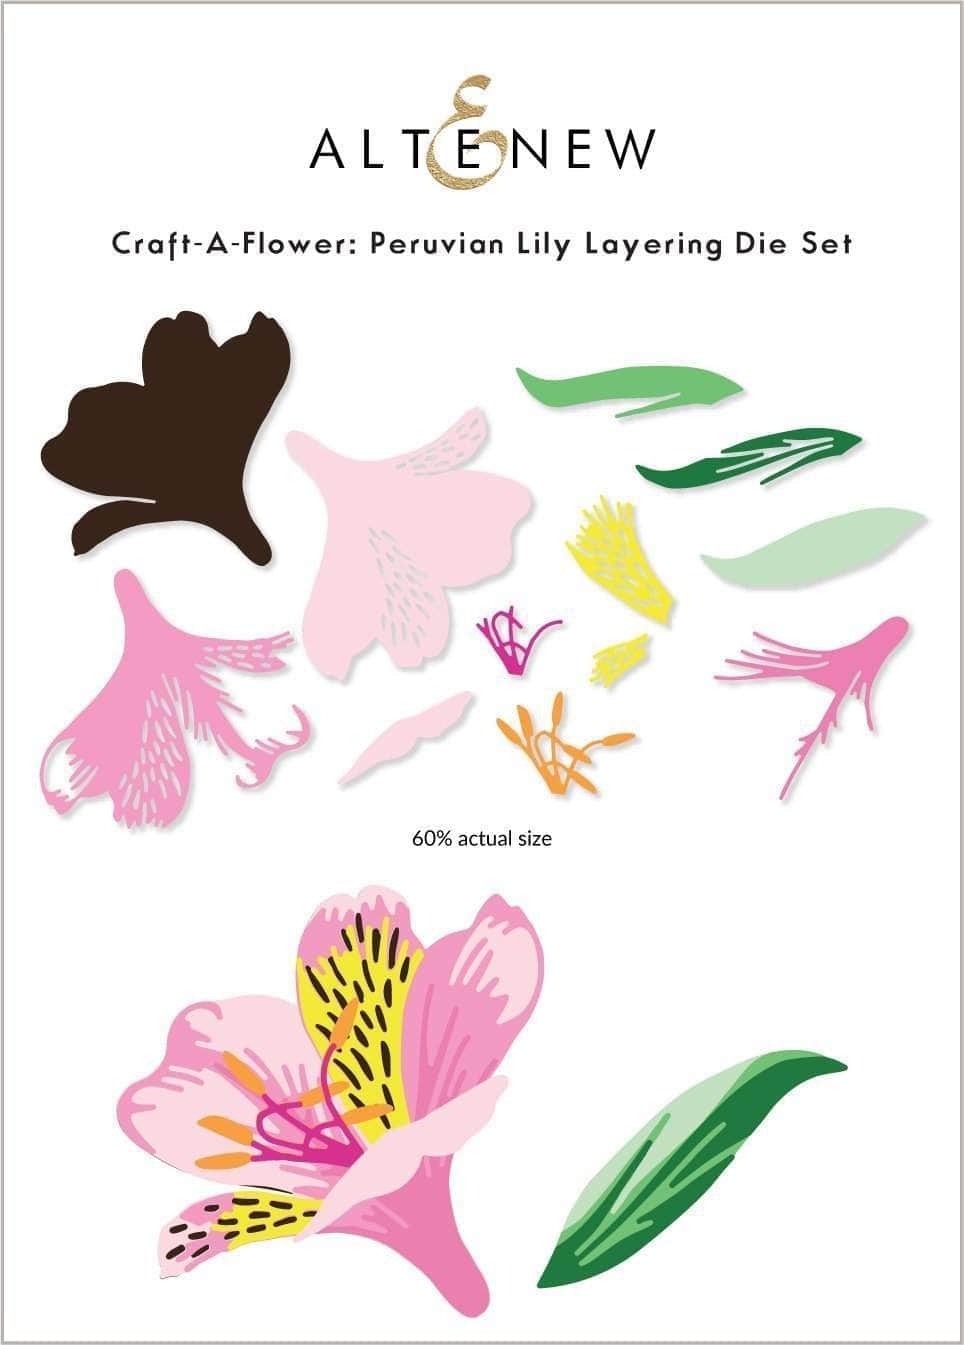 Craft-A-Flower: Peruvian Lily Layering Die Set – Altenew